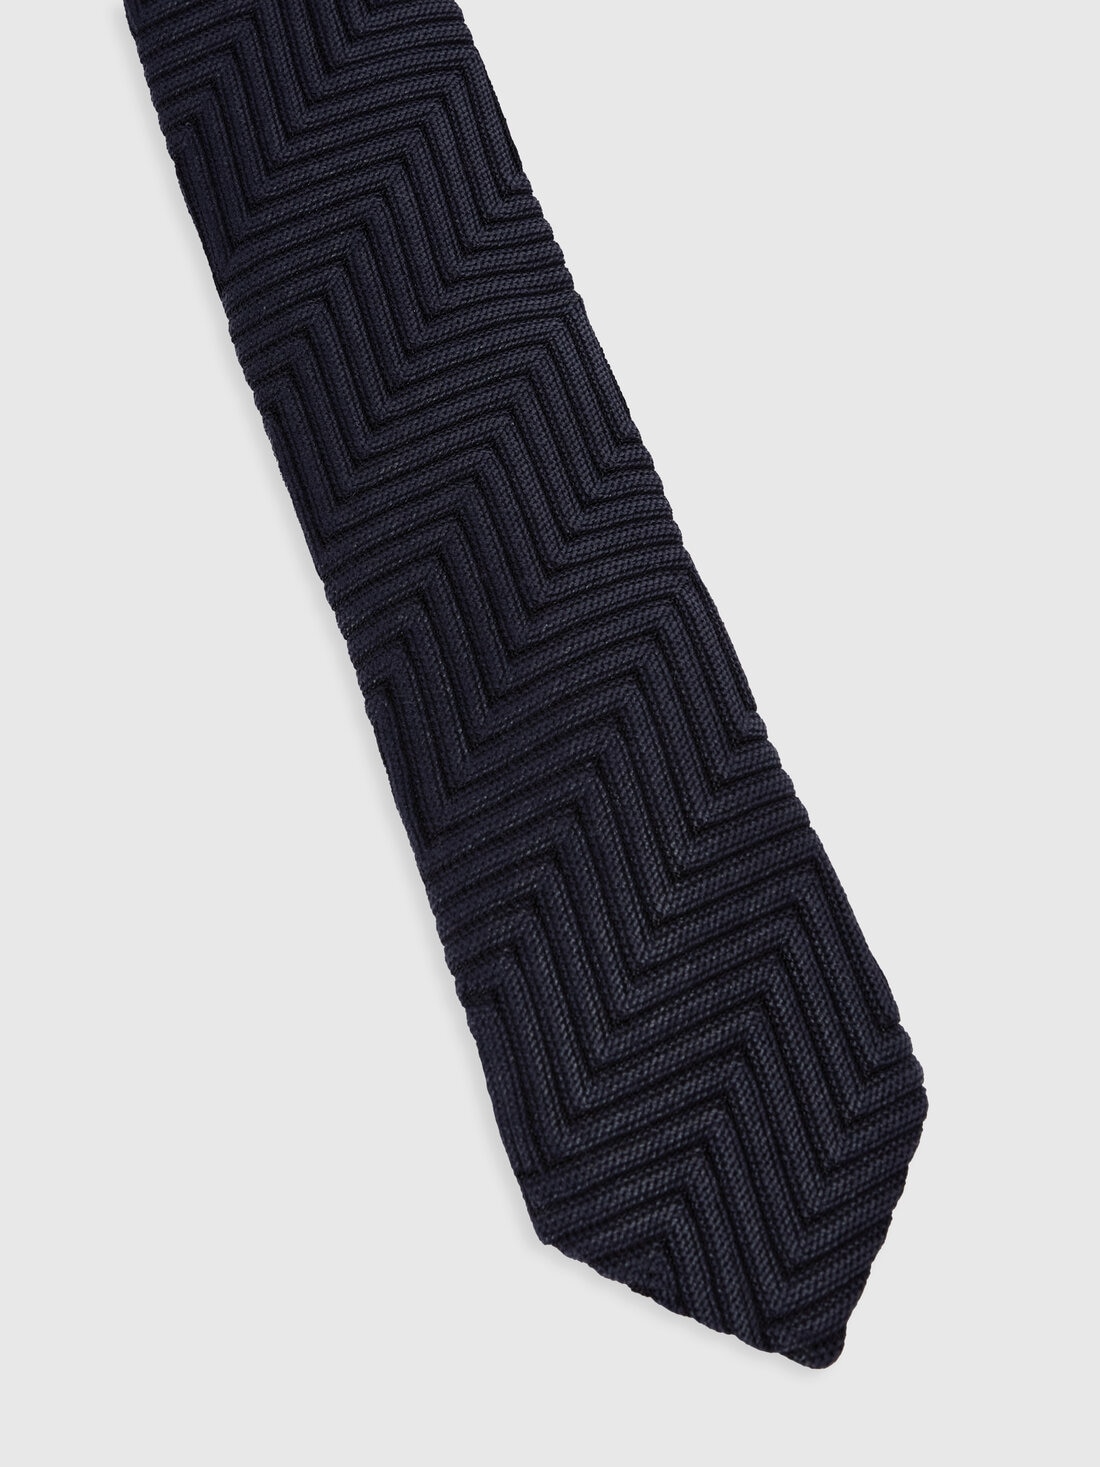 Krawatte aus Baumwolle und Viskose mit Chevronmuster, Mehrfarbig  - 8053147141824 - 1